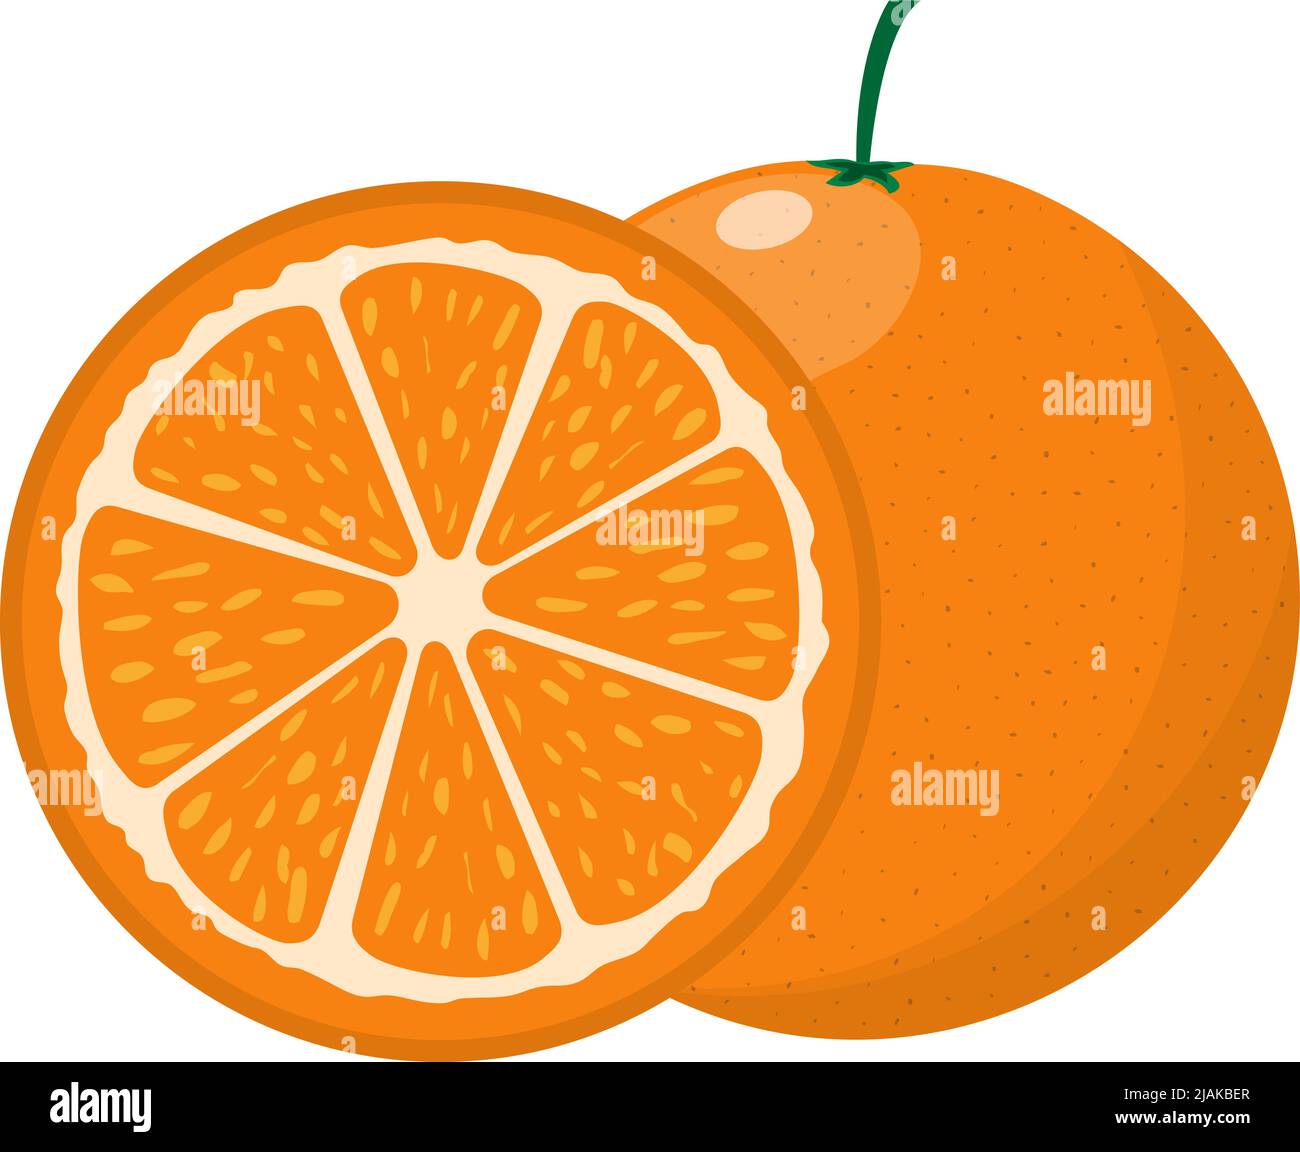 tranche d'orange mûre juteuse isolée sur fond blanc, illustration vectorielle plate Illustration de Vecteur